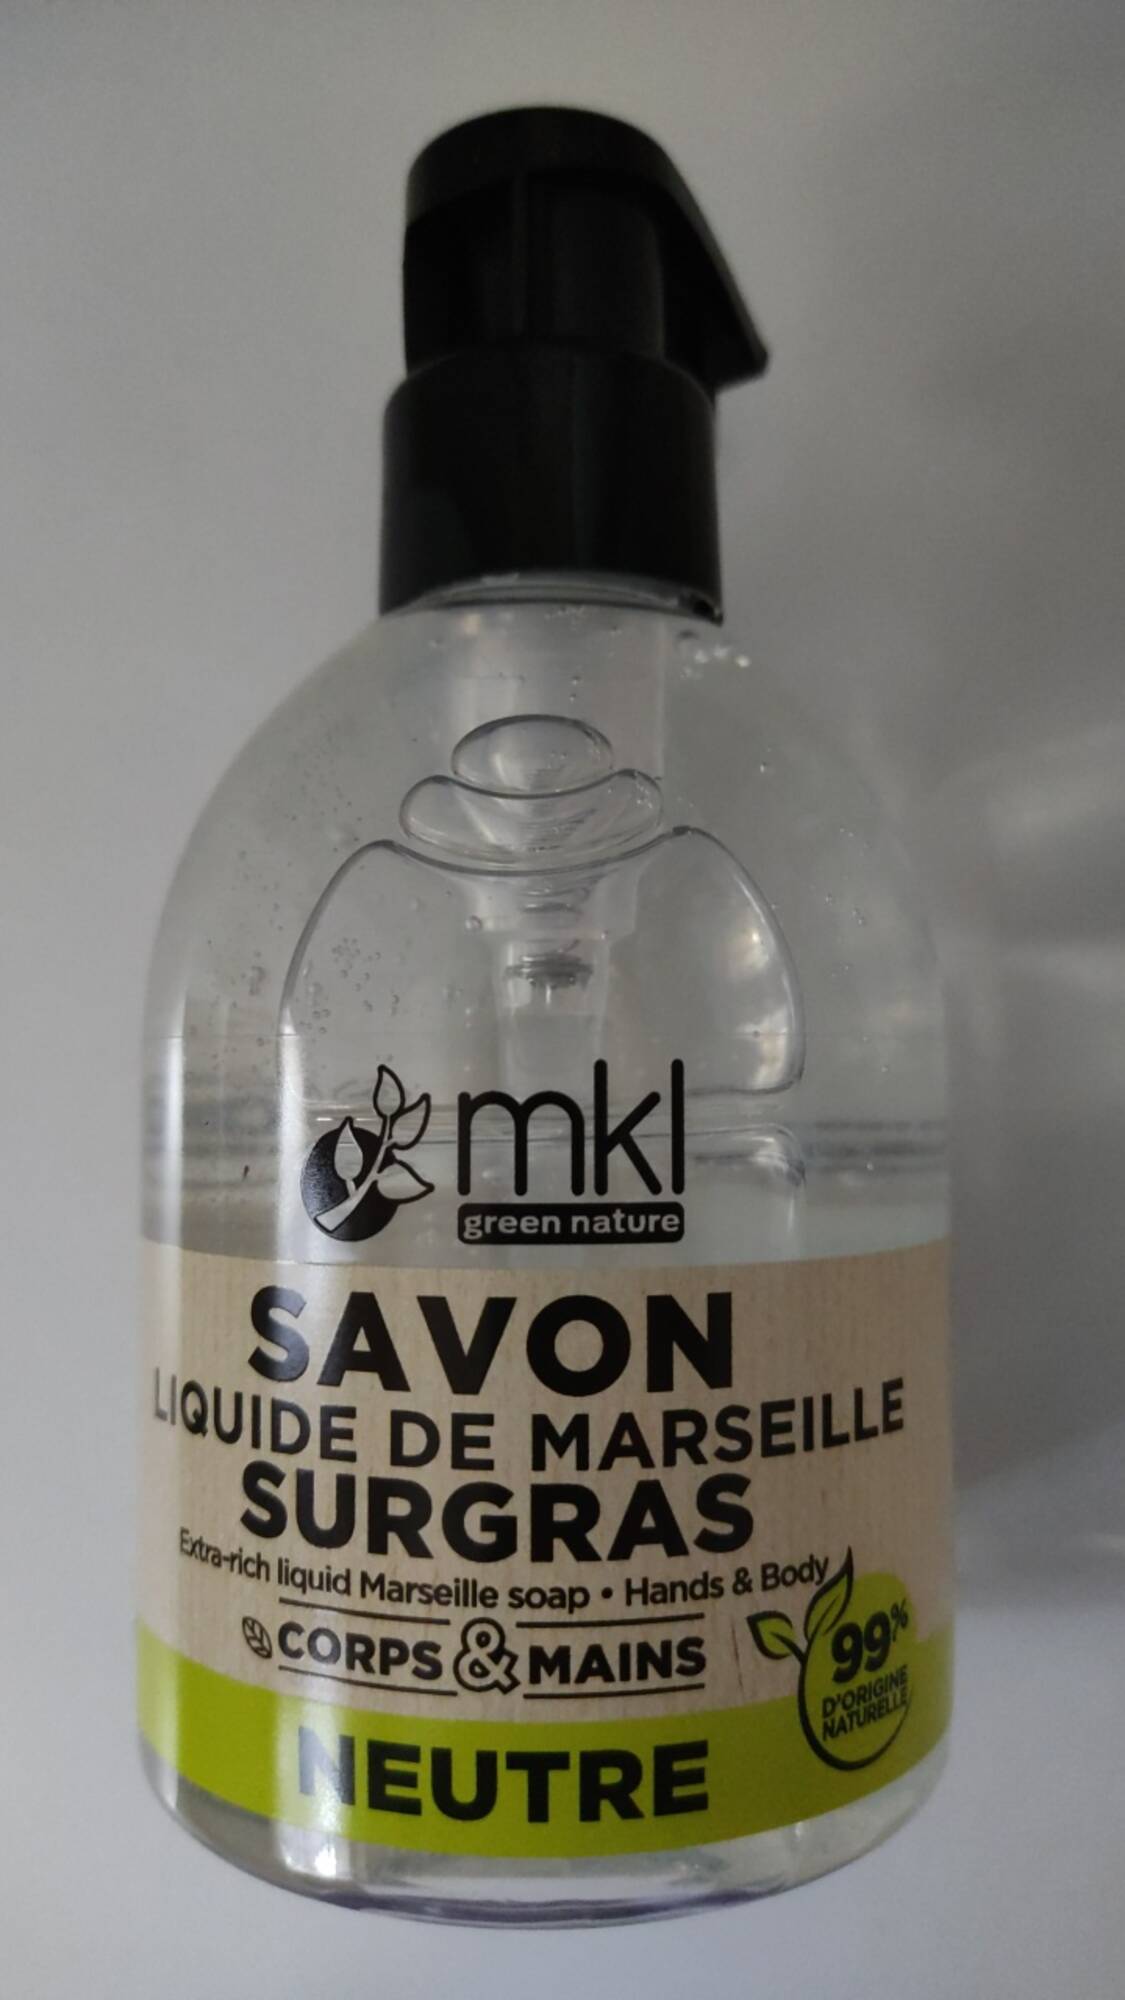 MKL GREEN NATURE - Neutre - Savon liquide de Marseille surgras corps & mains